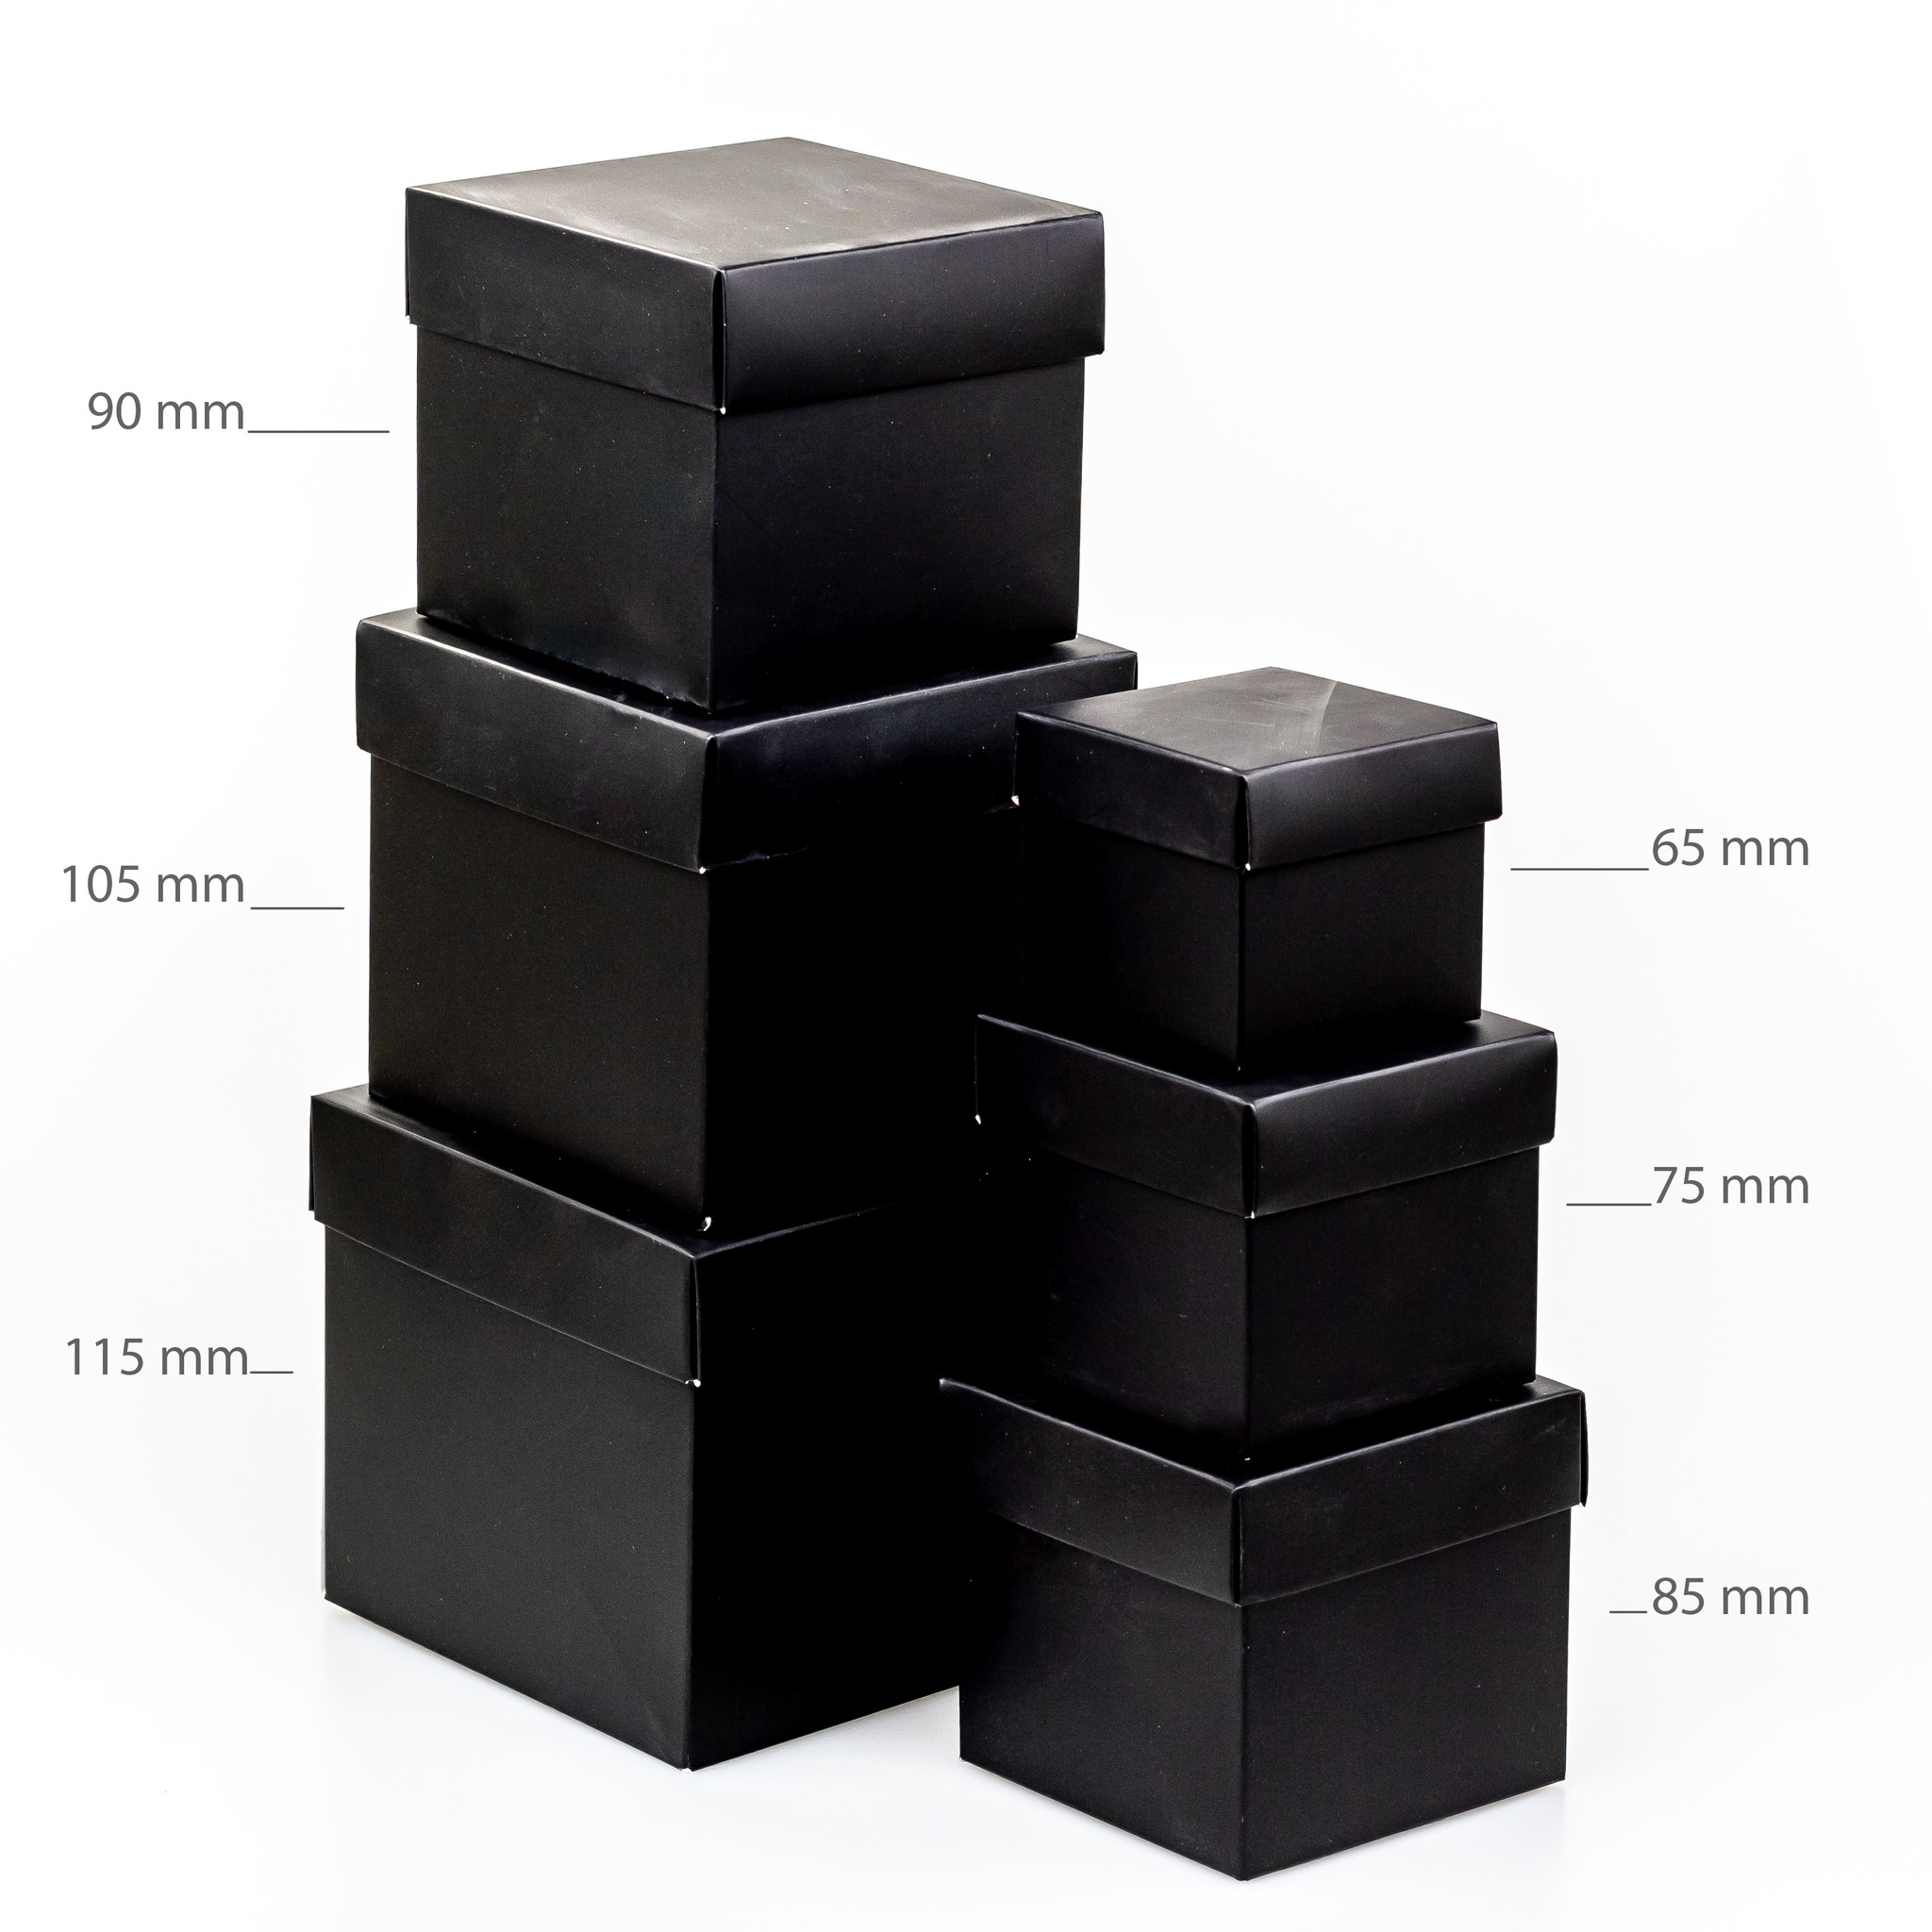 Cubebox - Glänzend Braun